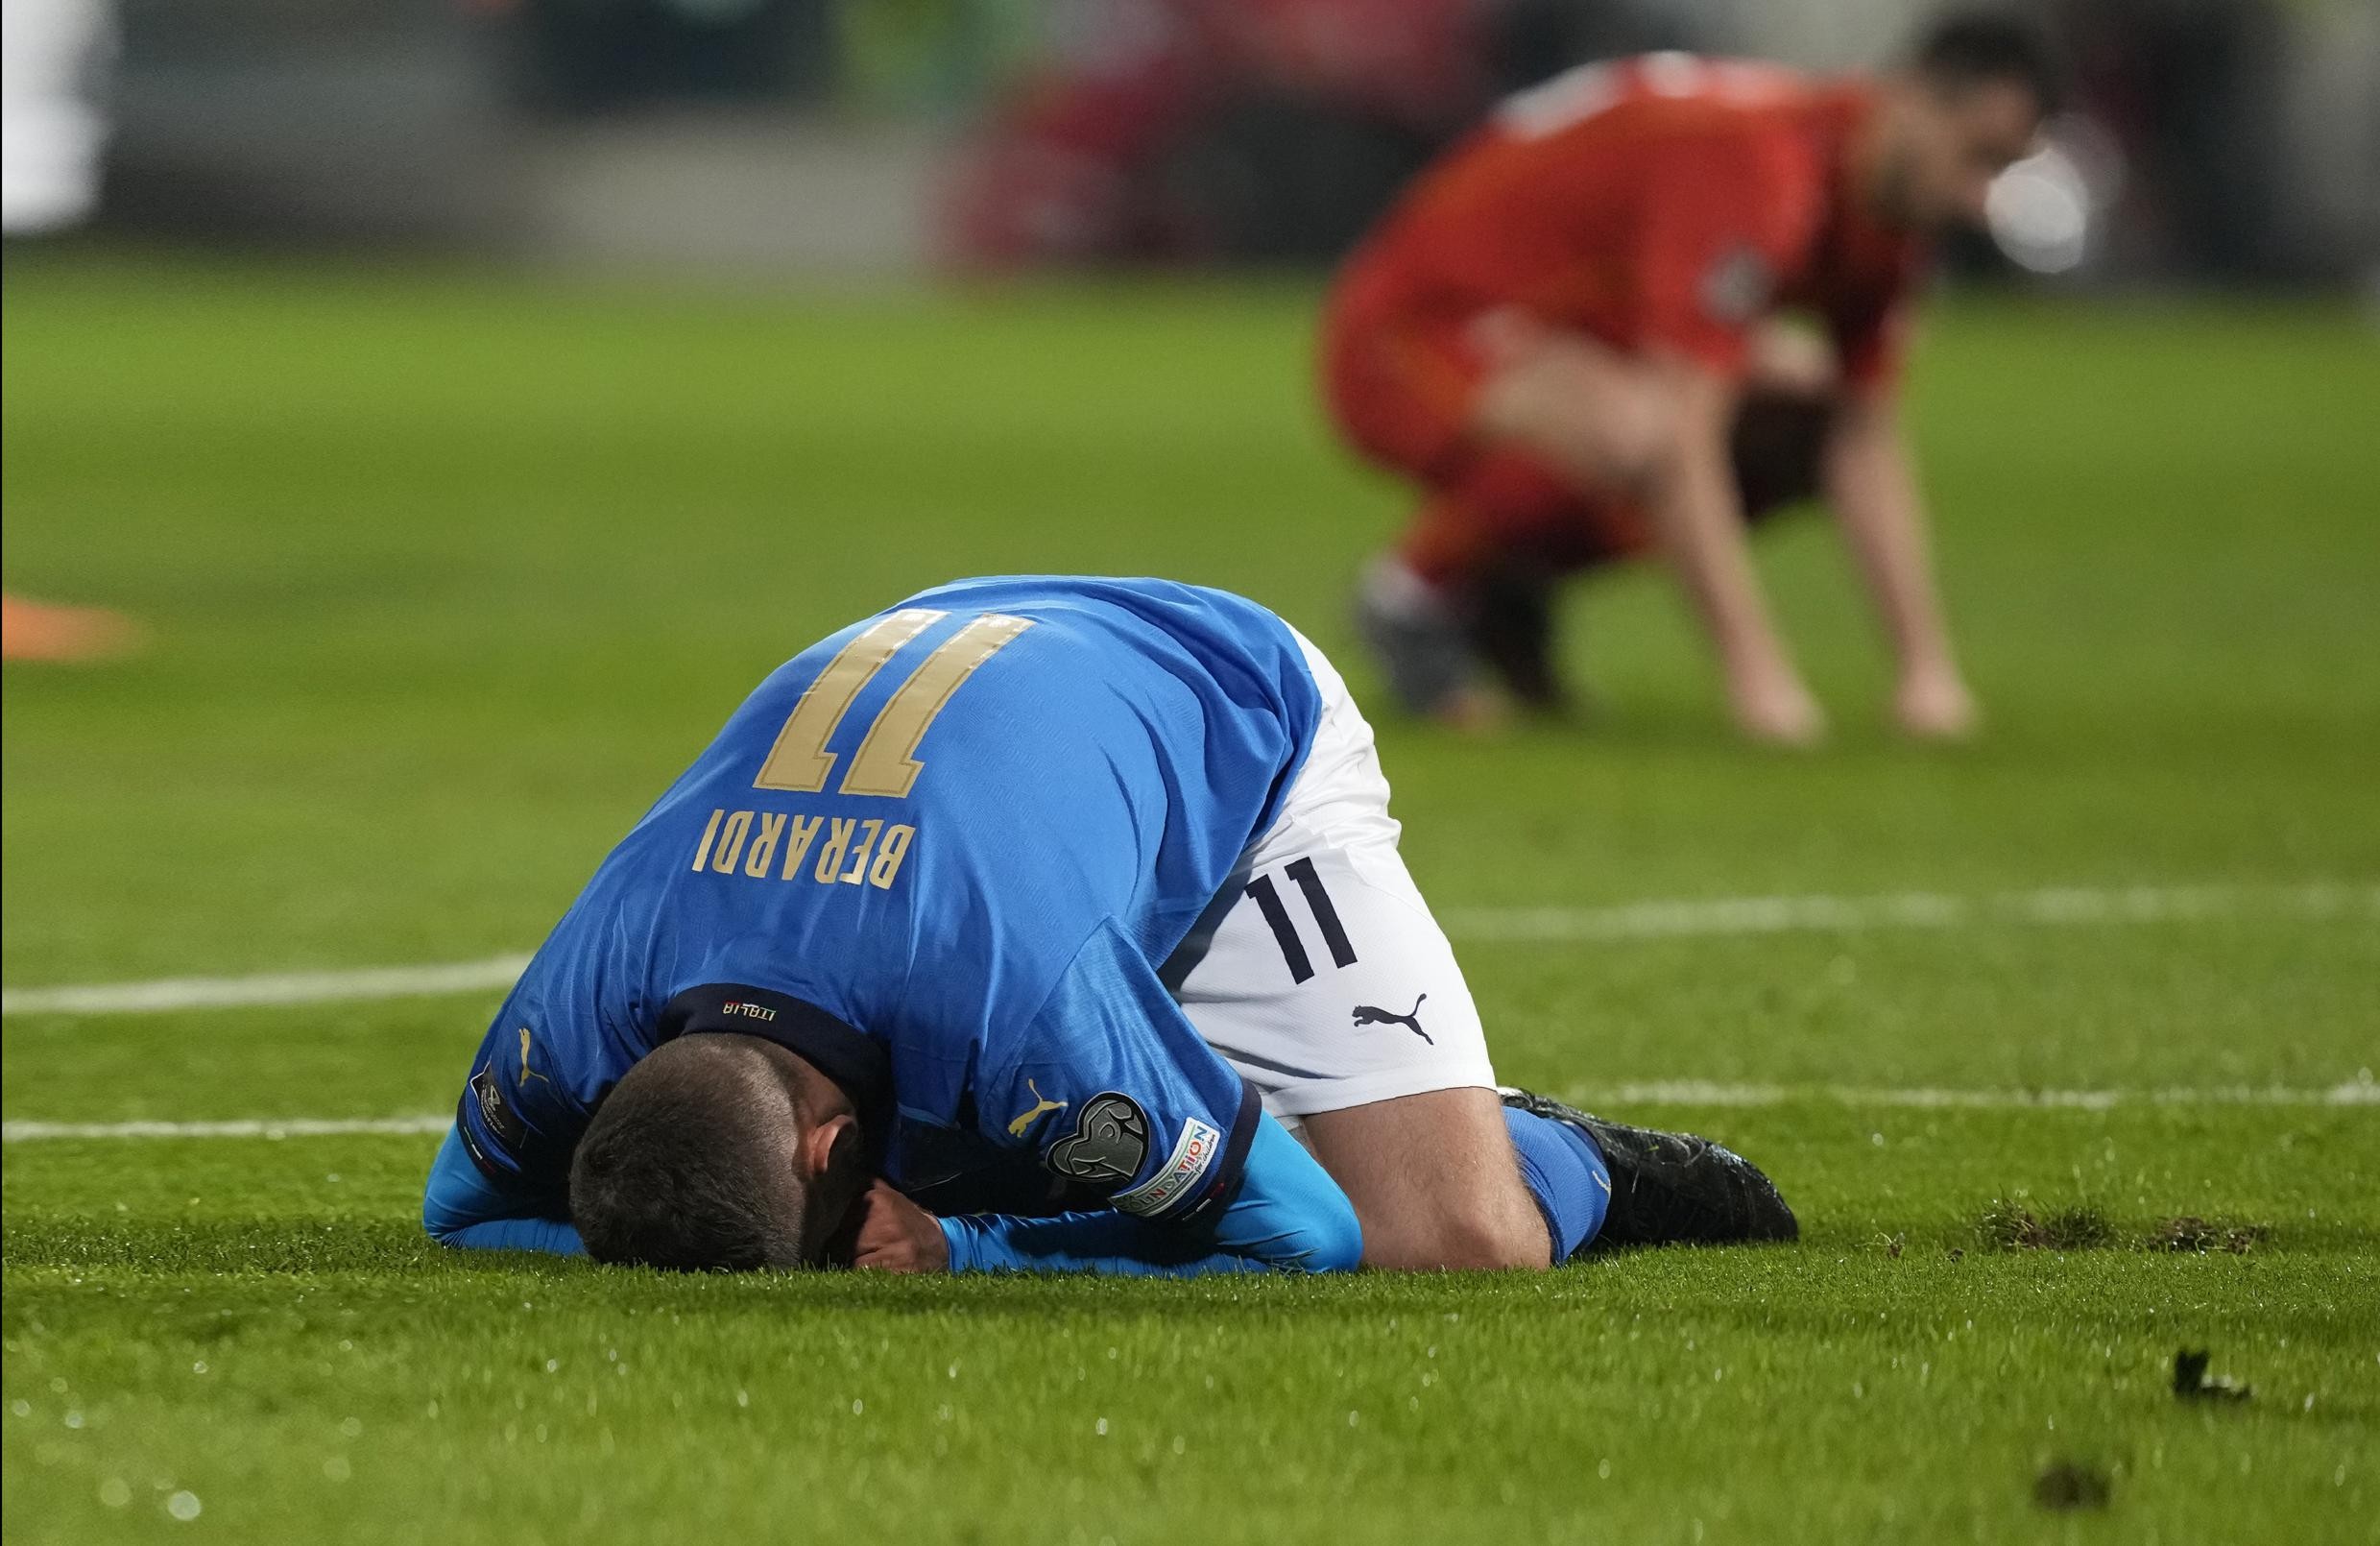 L’Italia campione d’Europa perde le qualificazioni ai Mondiali in Qatar dopo aver perso contro la Macedonia settentrionale